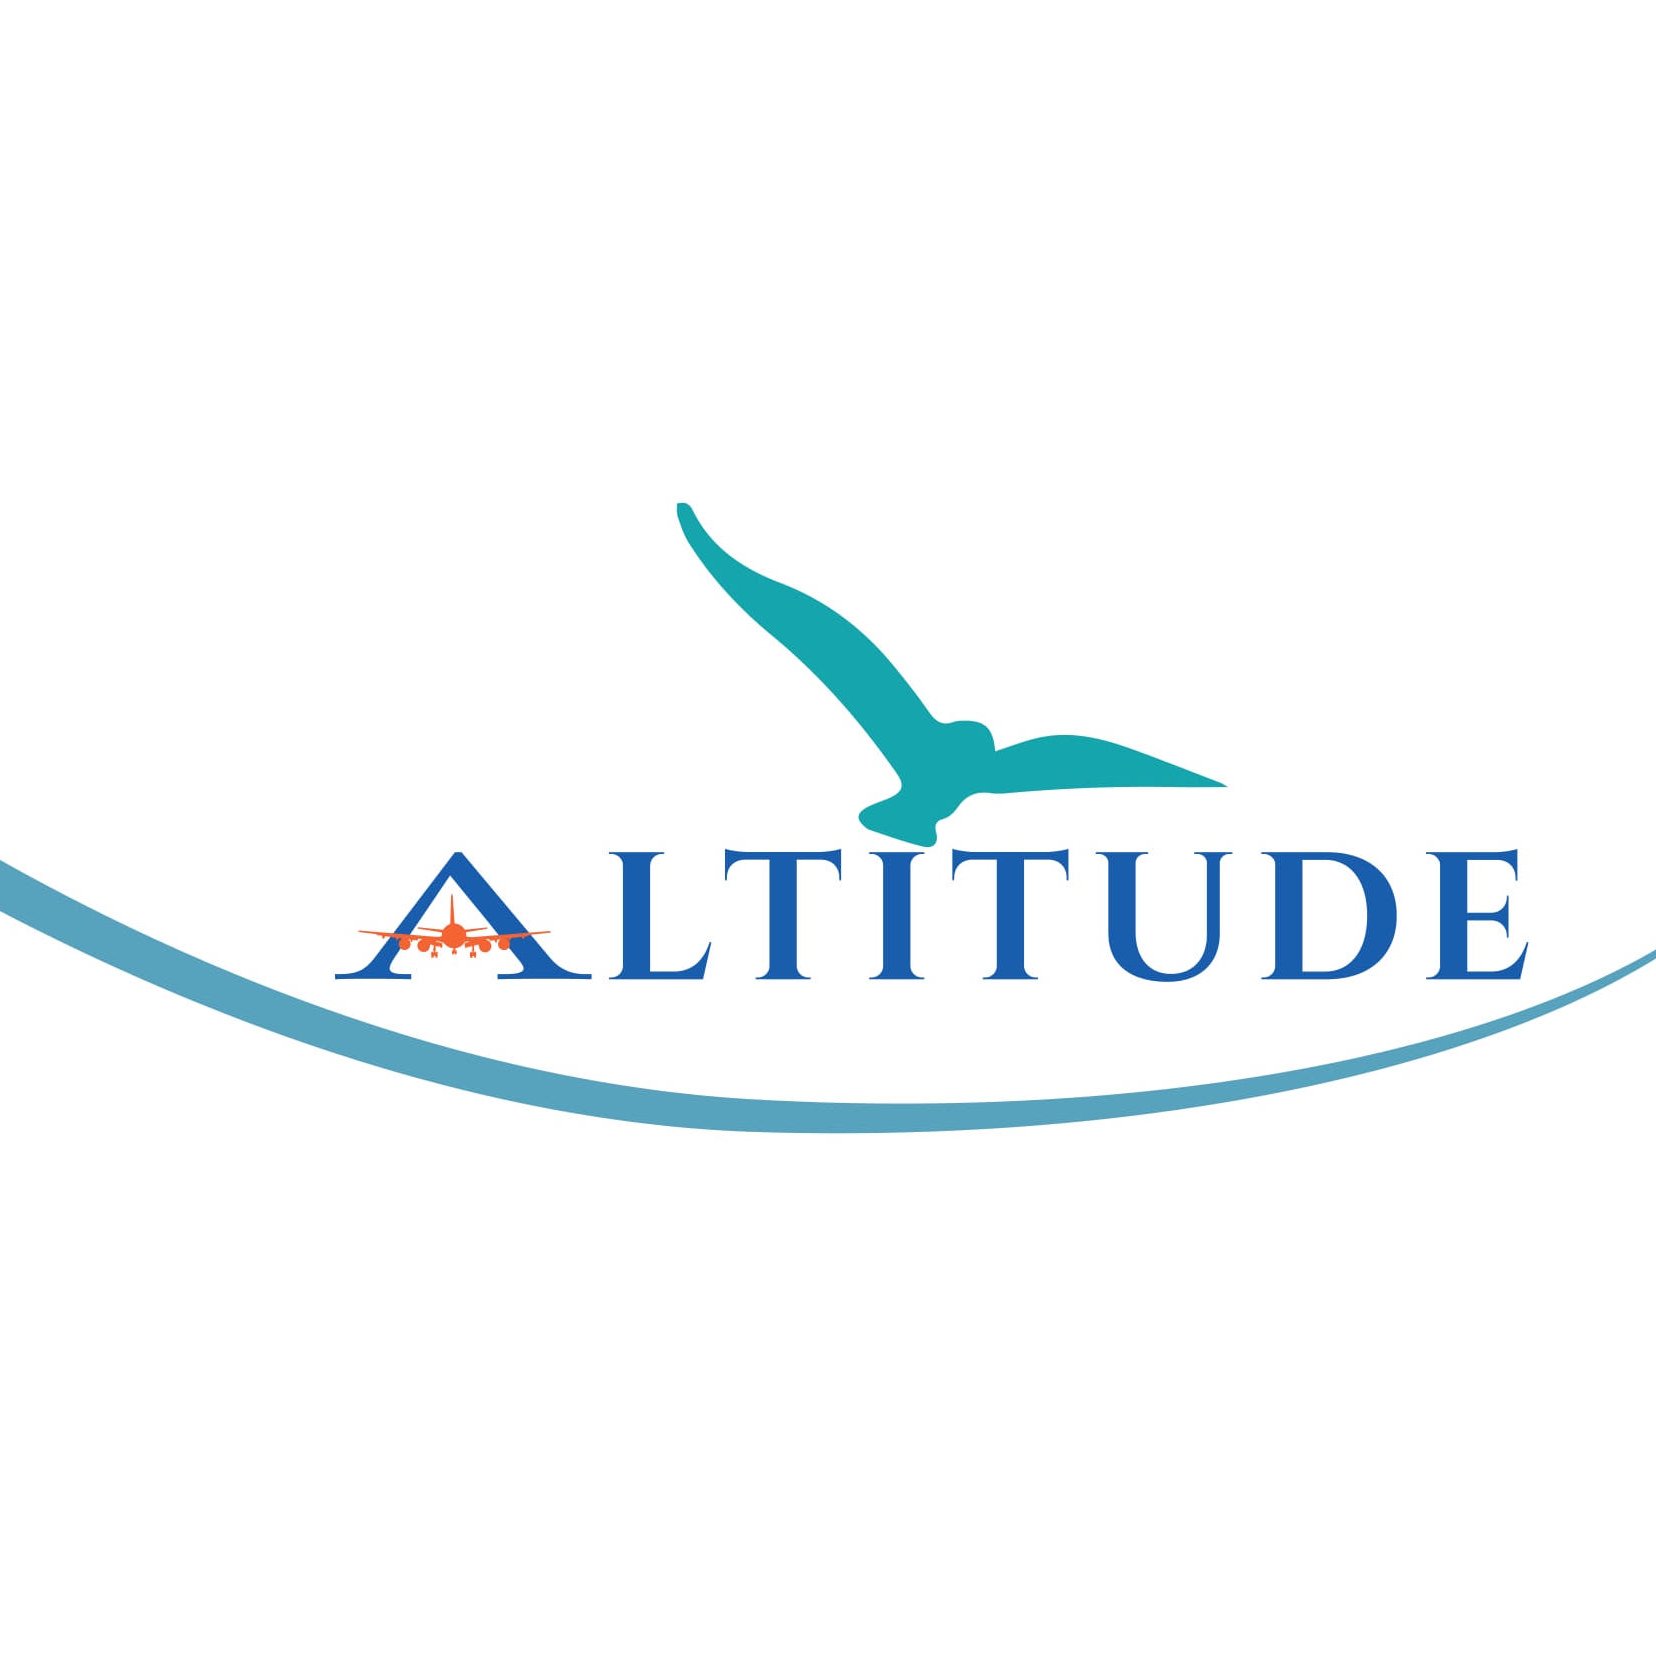 AltitudeMag est le Magazine de l’Aéroport International d’Abidjan en collaboration avec AERIA.